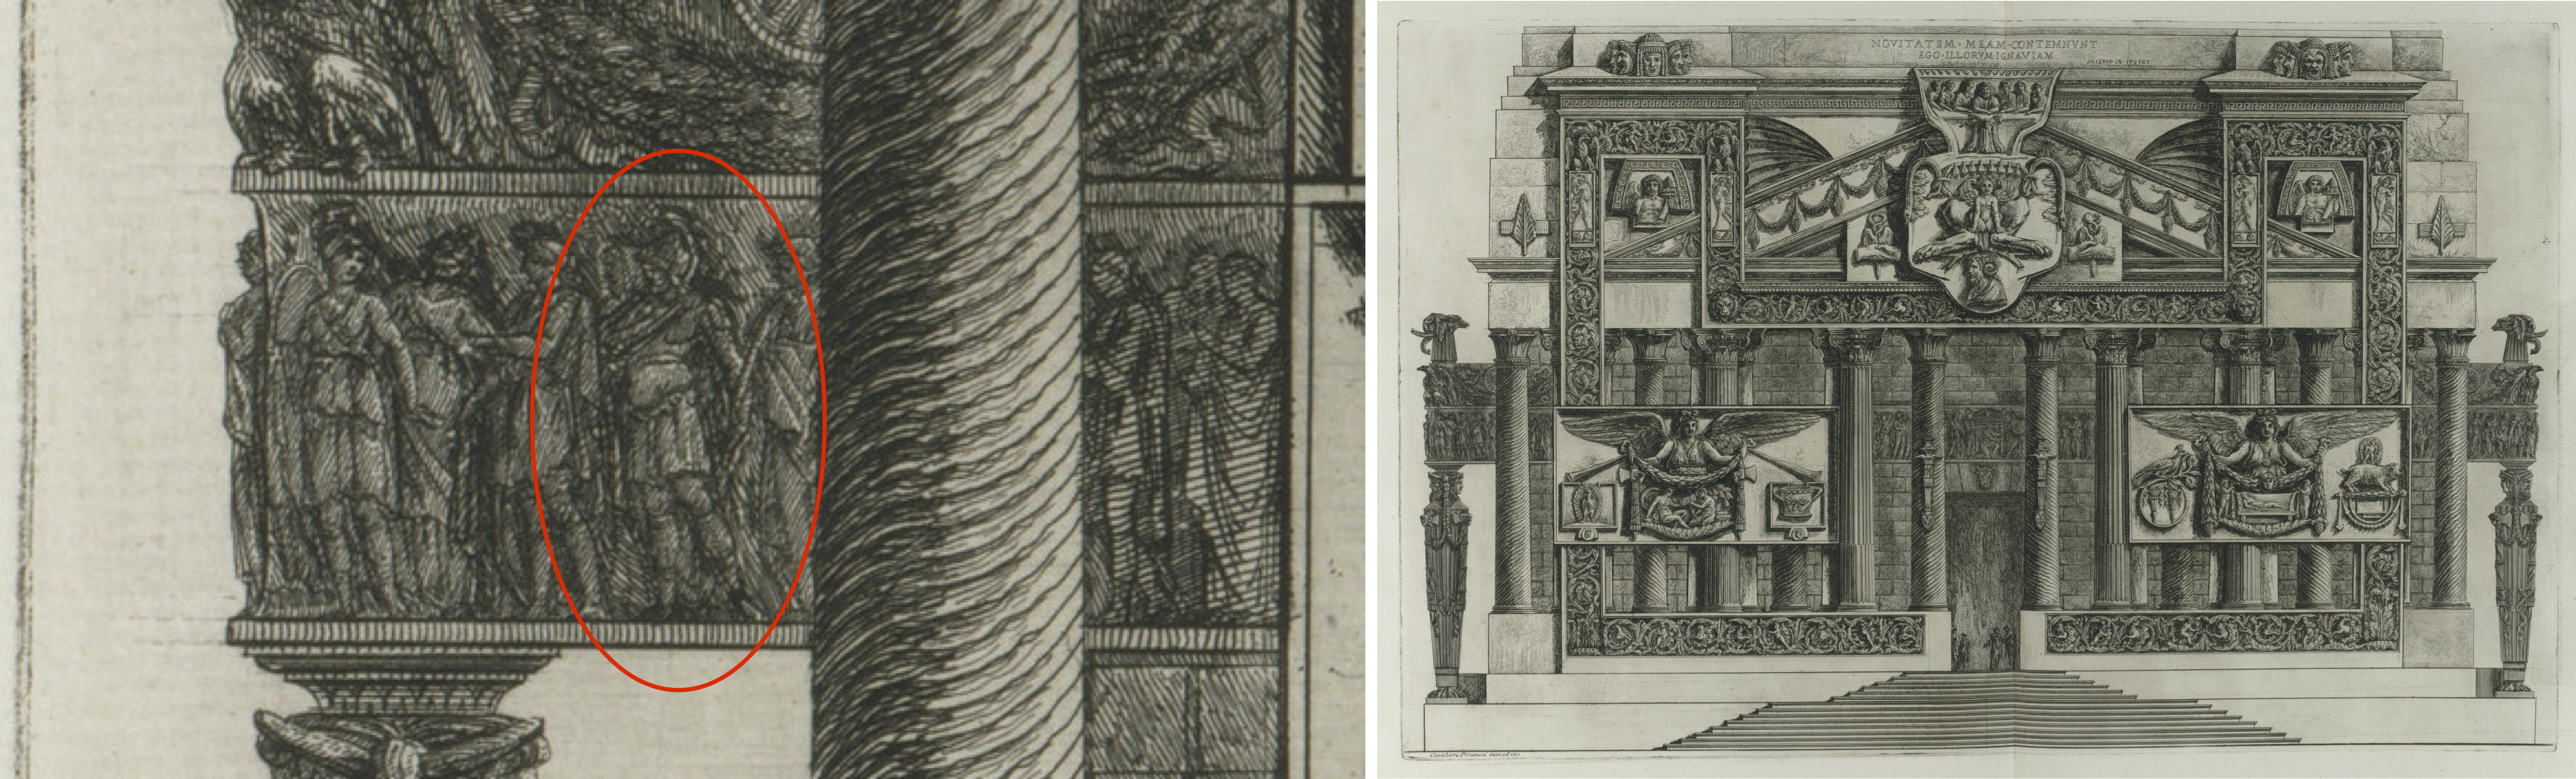 Zwei Piranesizeichnungen mit Reliefs